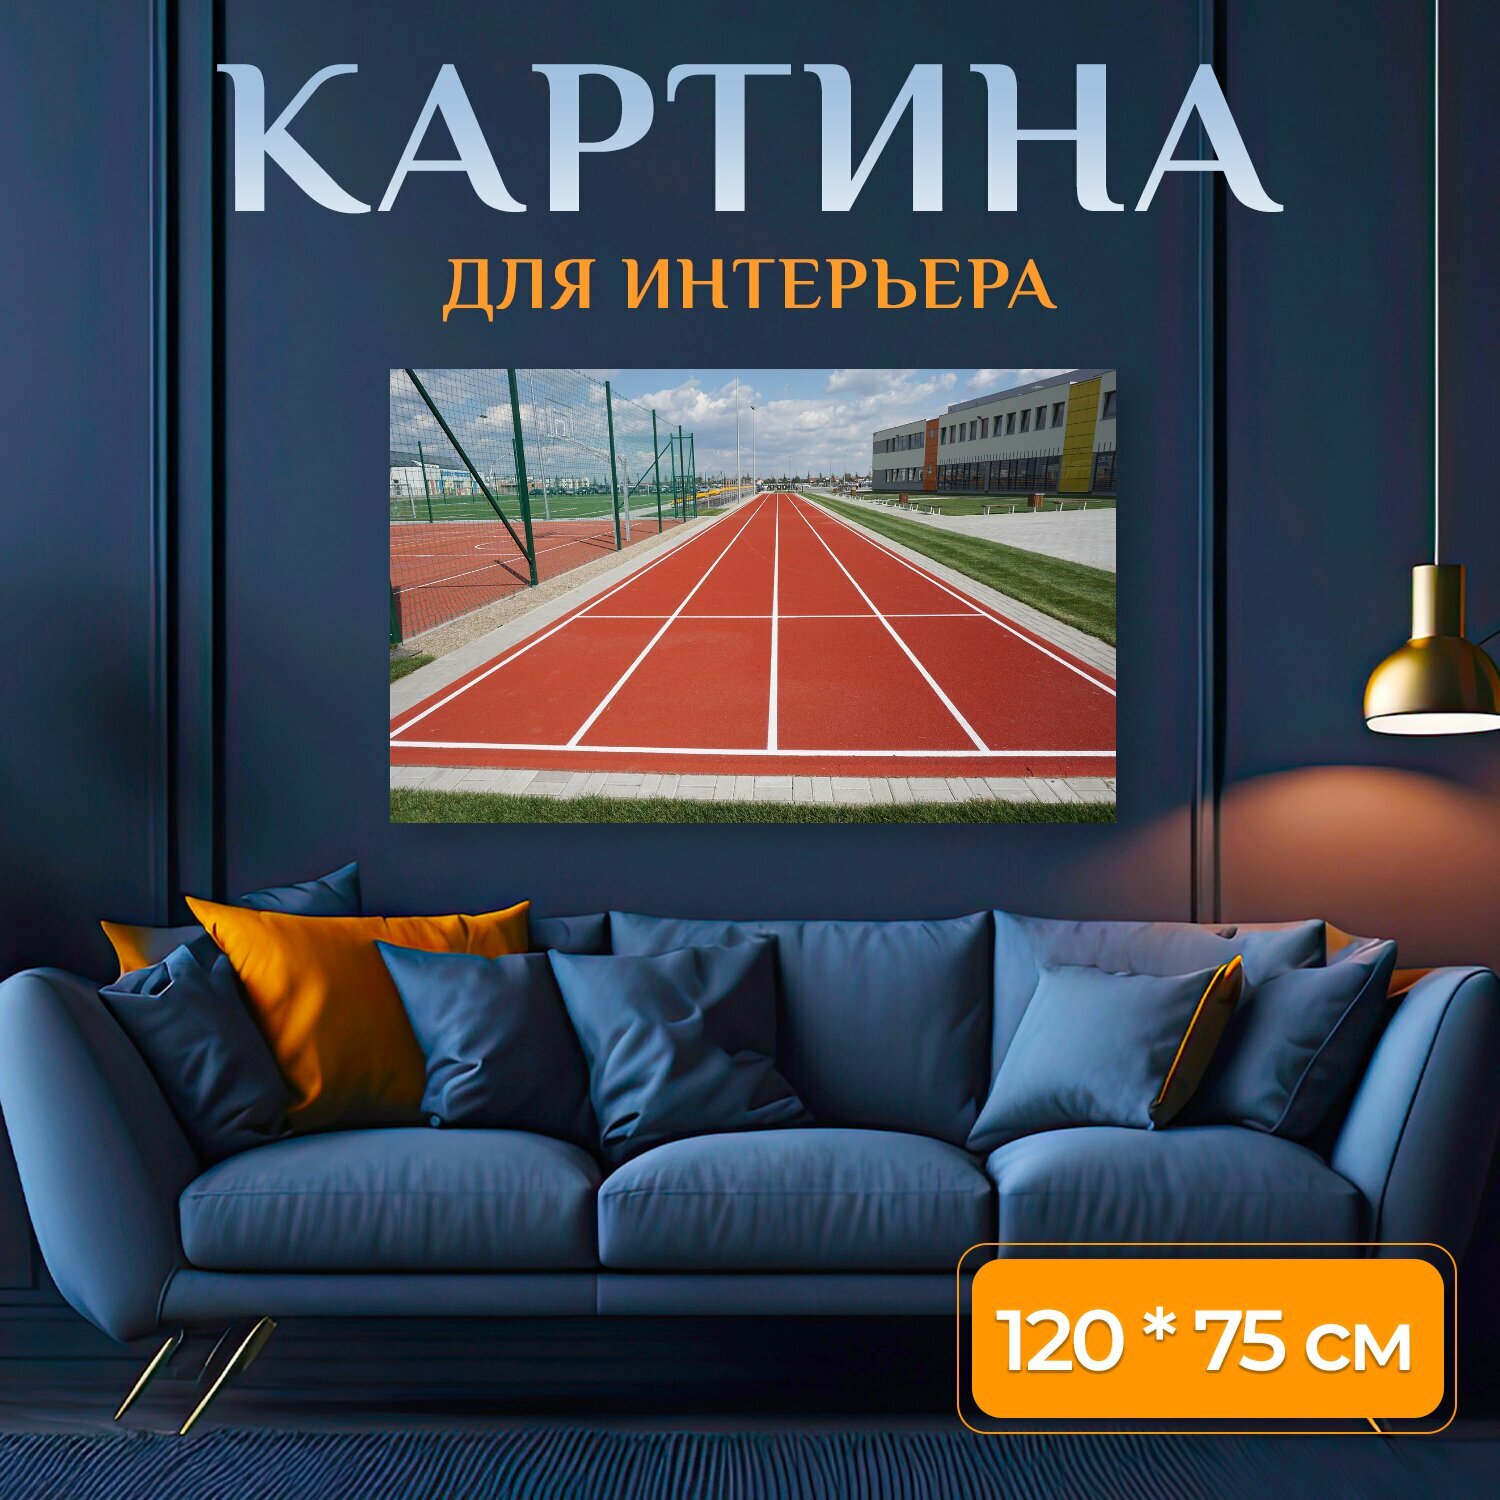 Картина на холсте "Спорт, беговая дорожка, лёгкая атлетика" на подрамнике 120х75 см. для интерьера